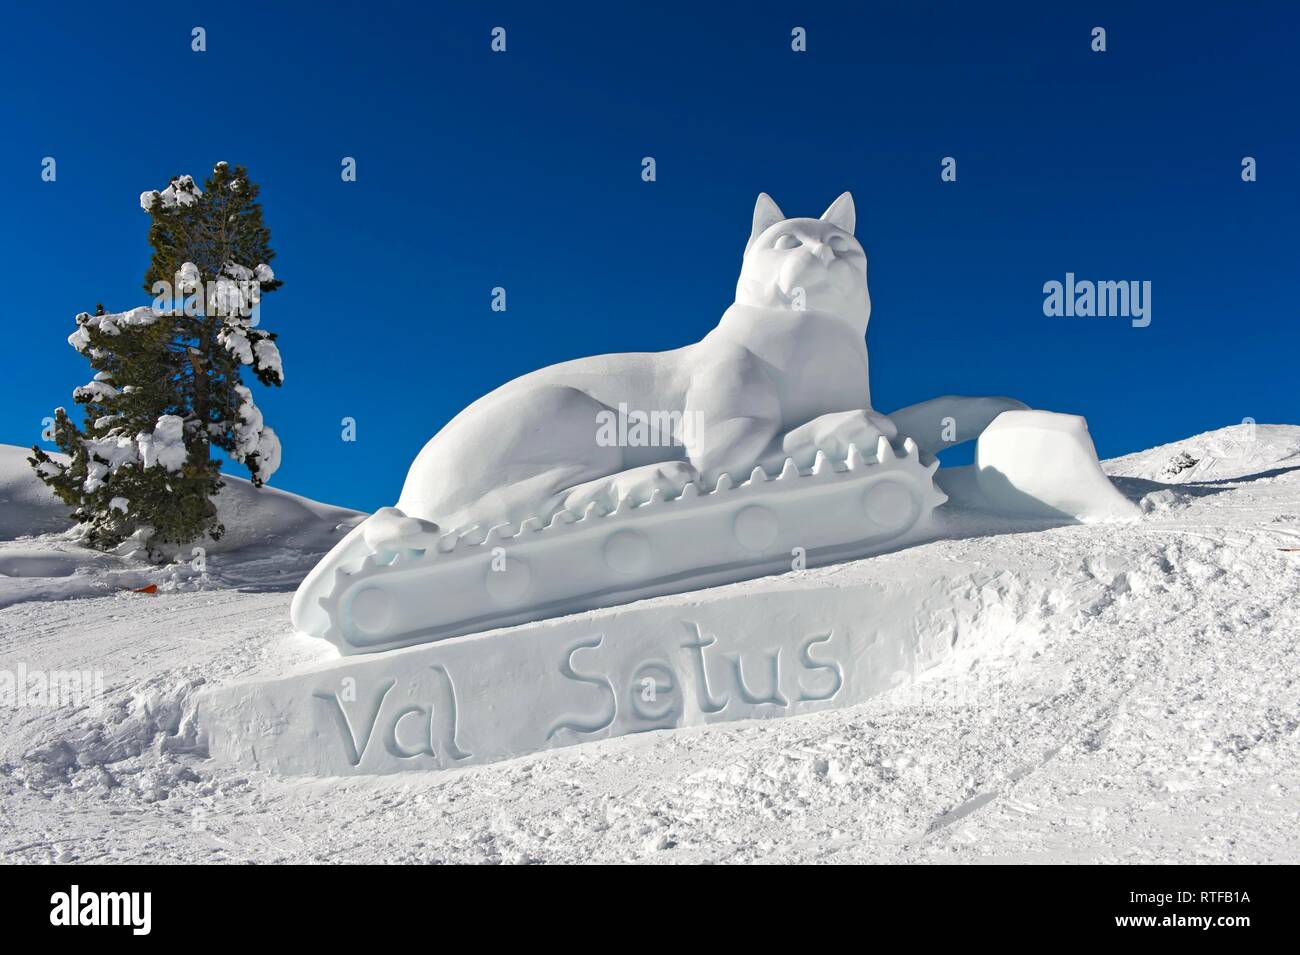 Scultura di ghiaccio figura di gatto, gatto delle nevi, Val Setus, Corvara, Badia, Alto Adige, Italia Foto Stock